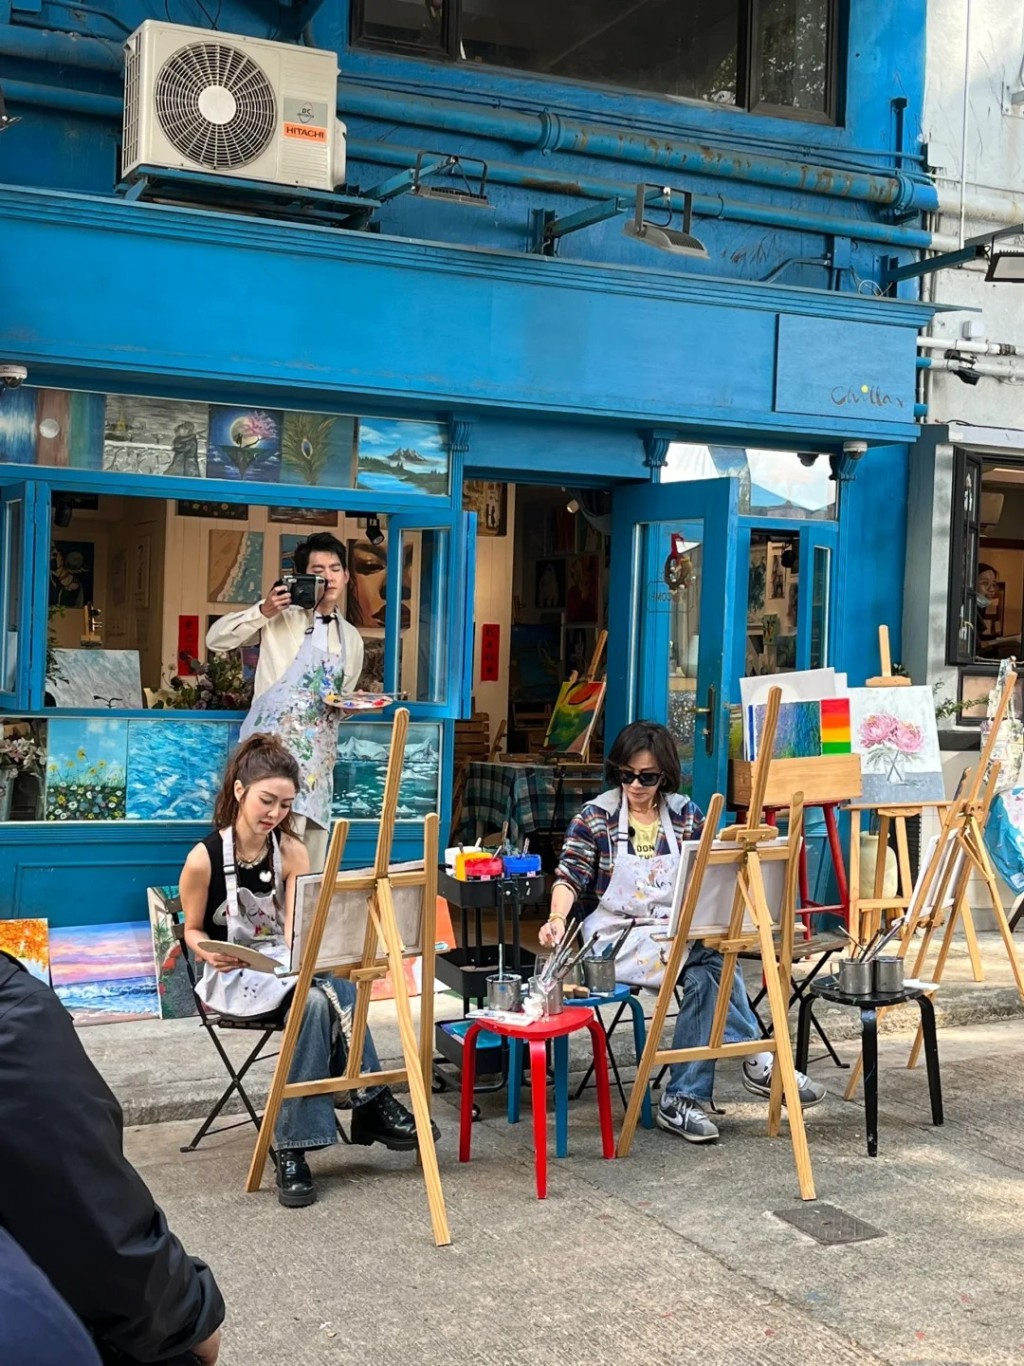 《嘉人自友約》共有六位女嘉賓，但近日有網民見到劉嘉玲與薛凱琪在香港街頭拍攝。